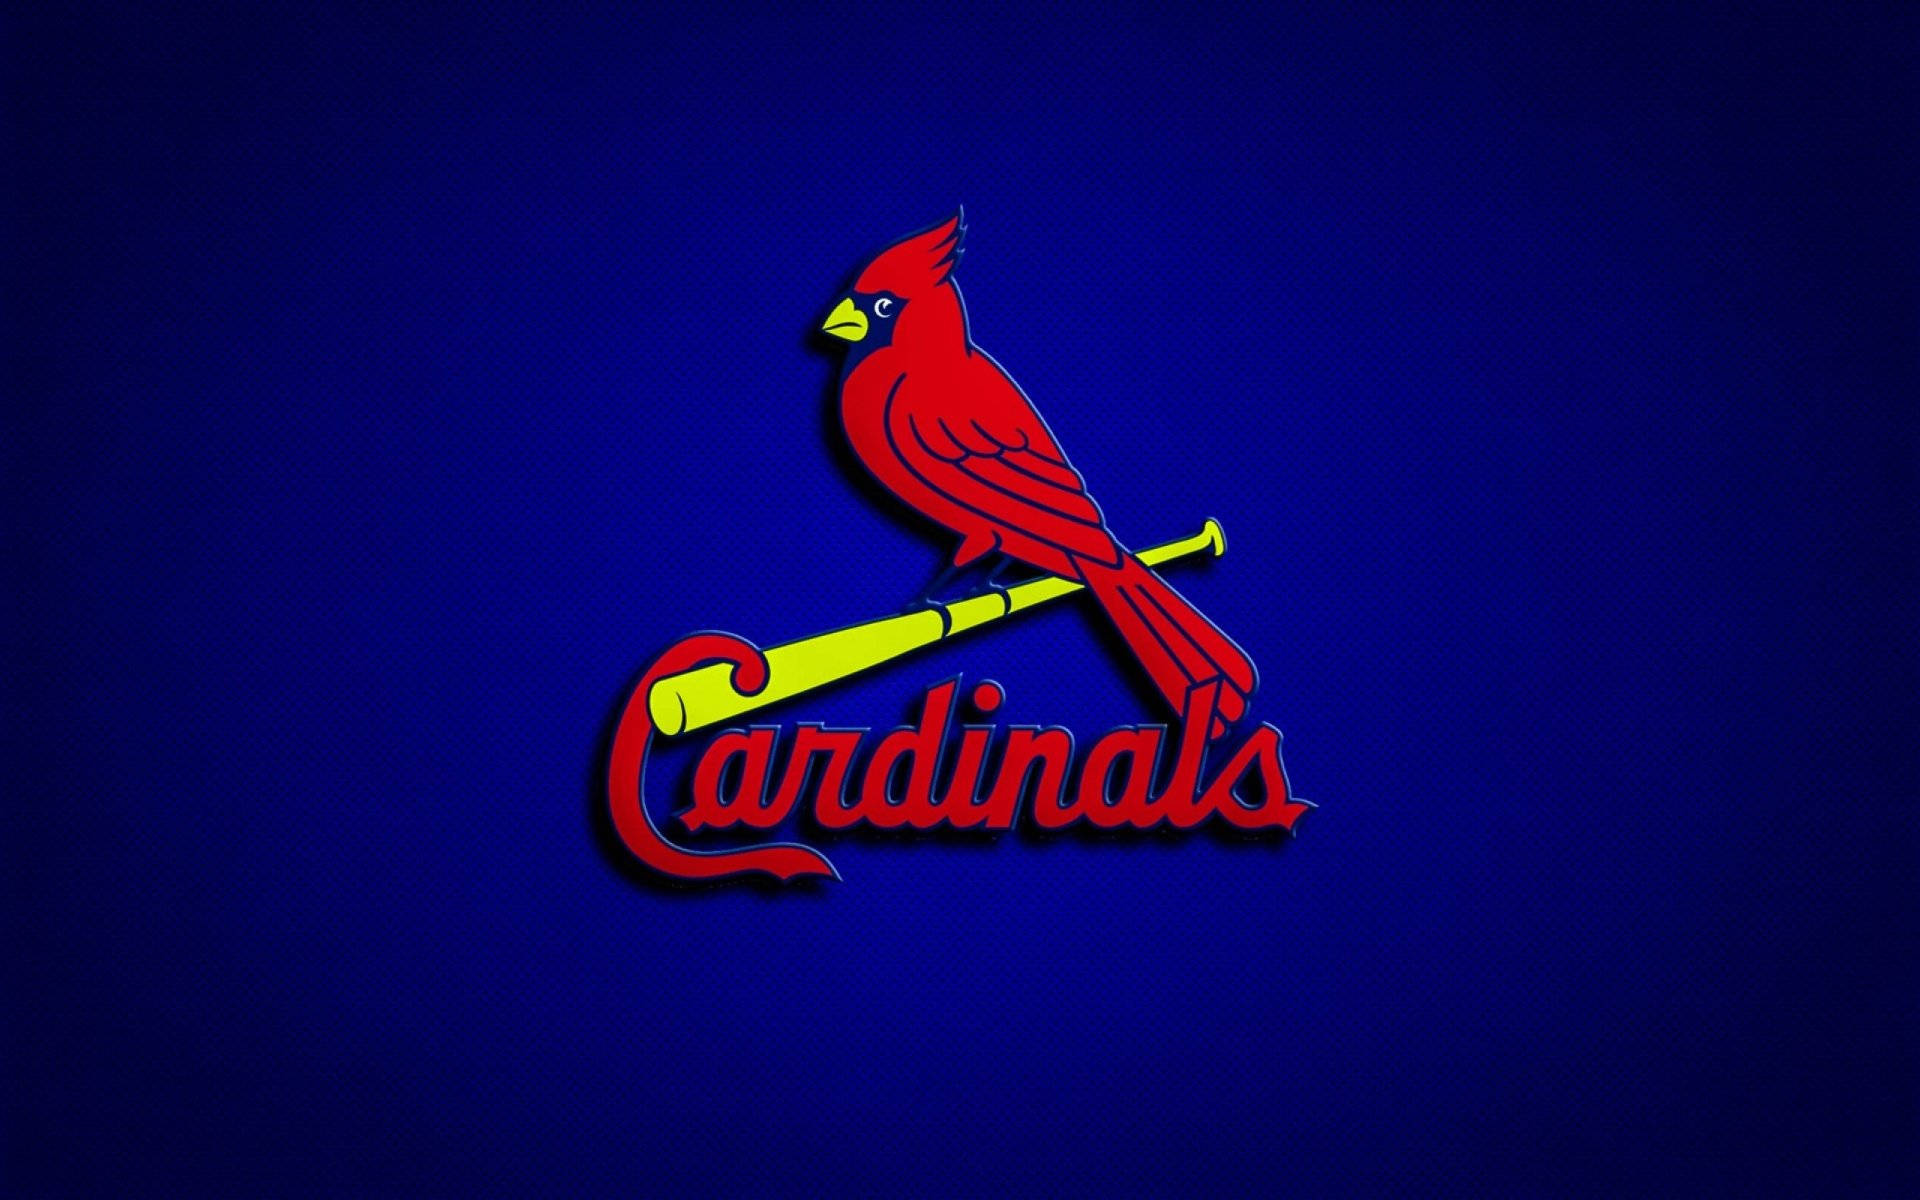 St Louis Cardinals Red Bird Emblem Wallpaper